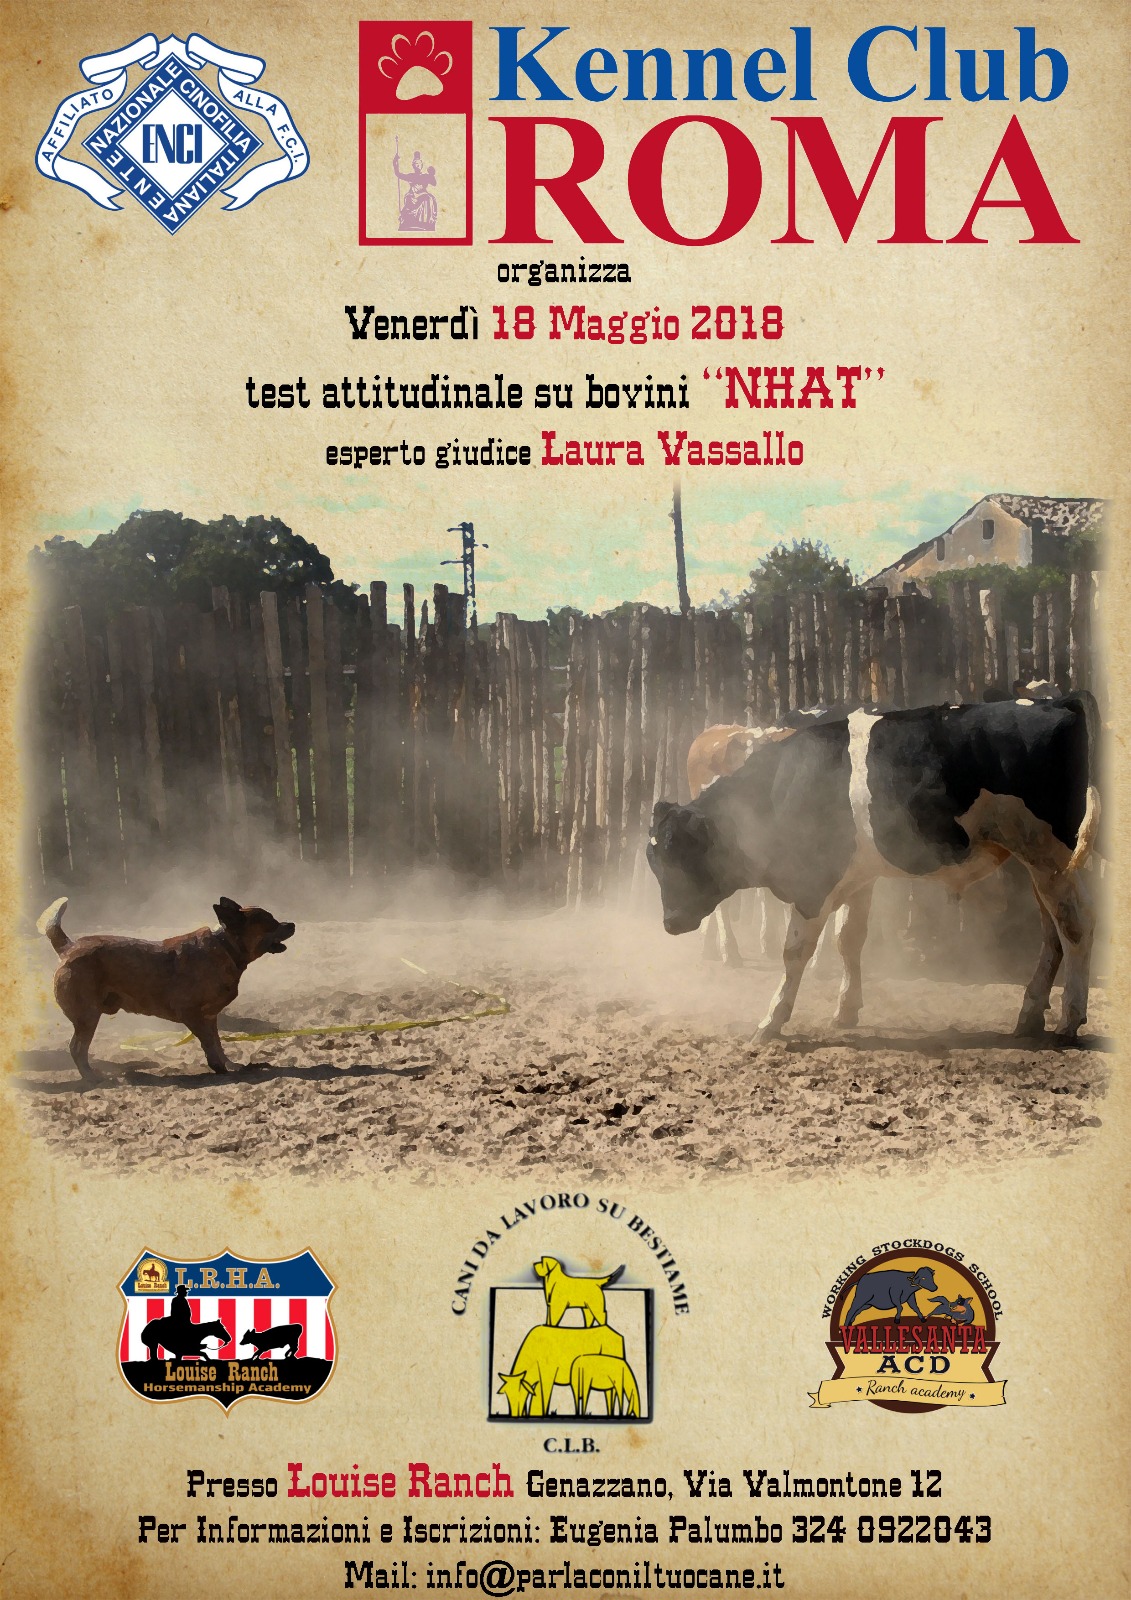 18 MAGGIO 2018 TEST ATTITUDINALE SU BOVINI NHAT presso LOUISE RANCH ROMA